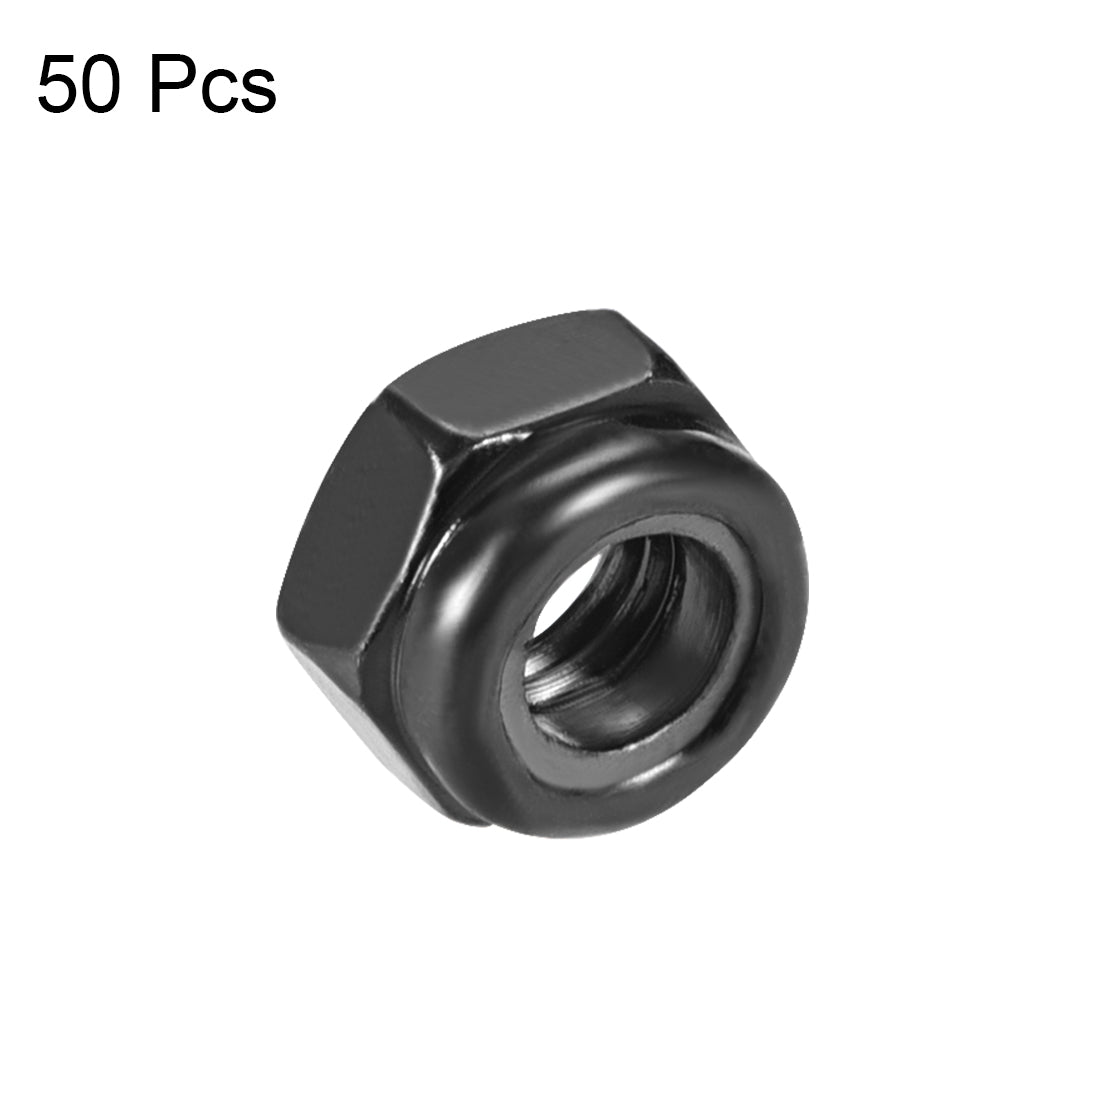 uxcell Uxcell M5x0.8mm Hex Lock Nuts Carbon Steel Nylon Insert Self-Lock Nuts, 50Pcs Black